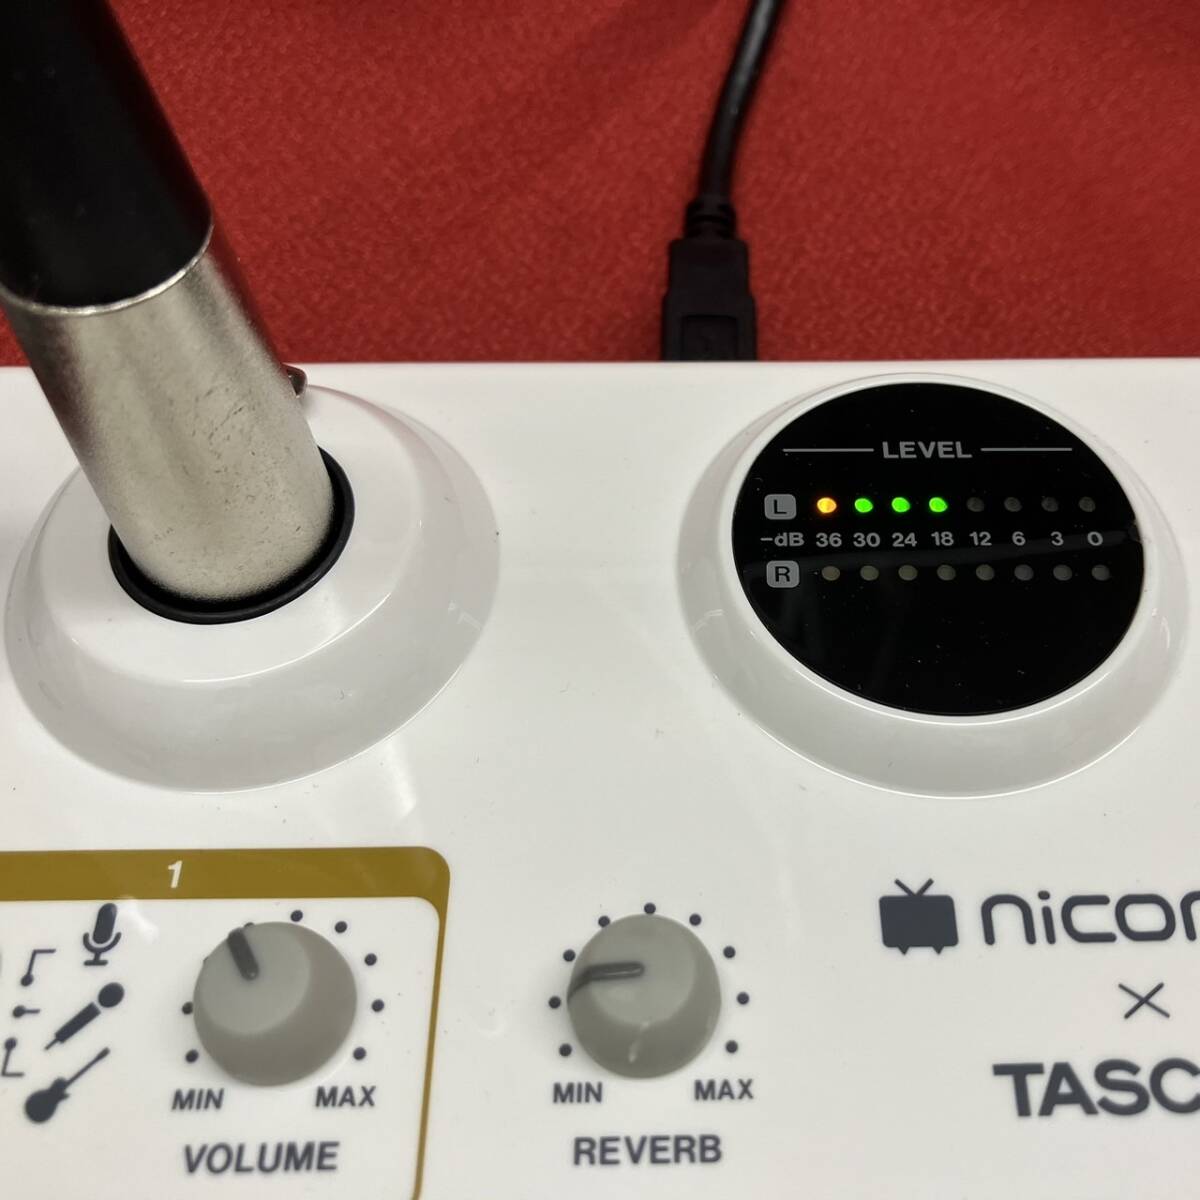 TEAC TASCAM USBオーディオインターフェース US-42 ニコニコ動画モデル,コンデンサーマイクロホン TM-80 オマケ付き_画像5